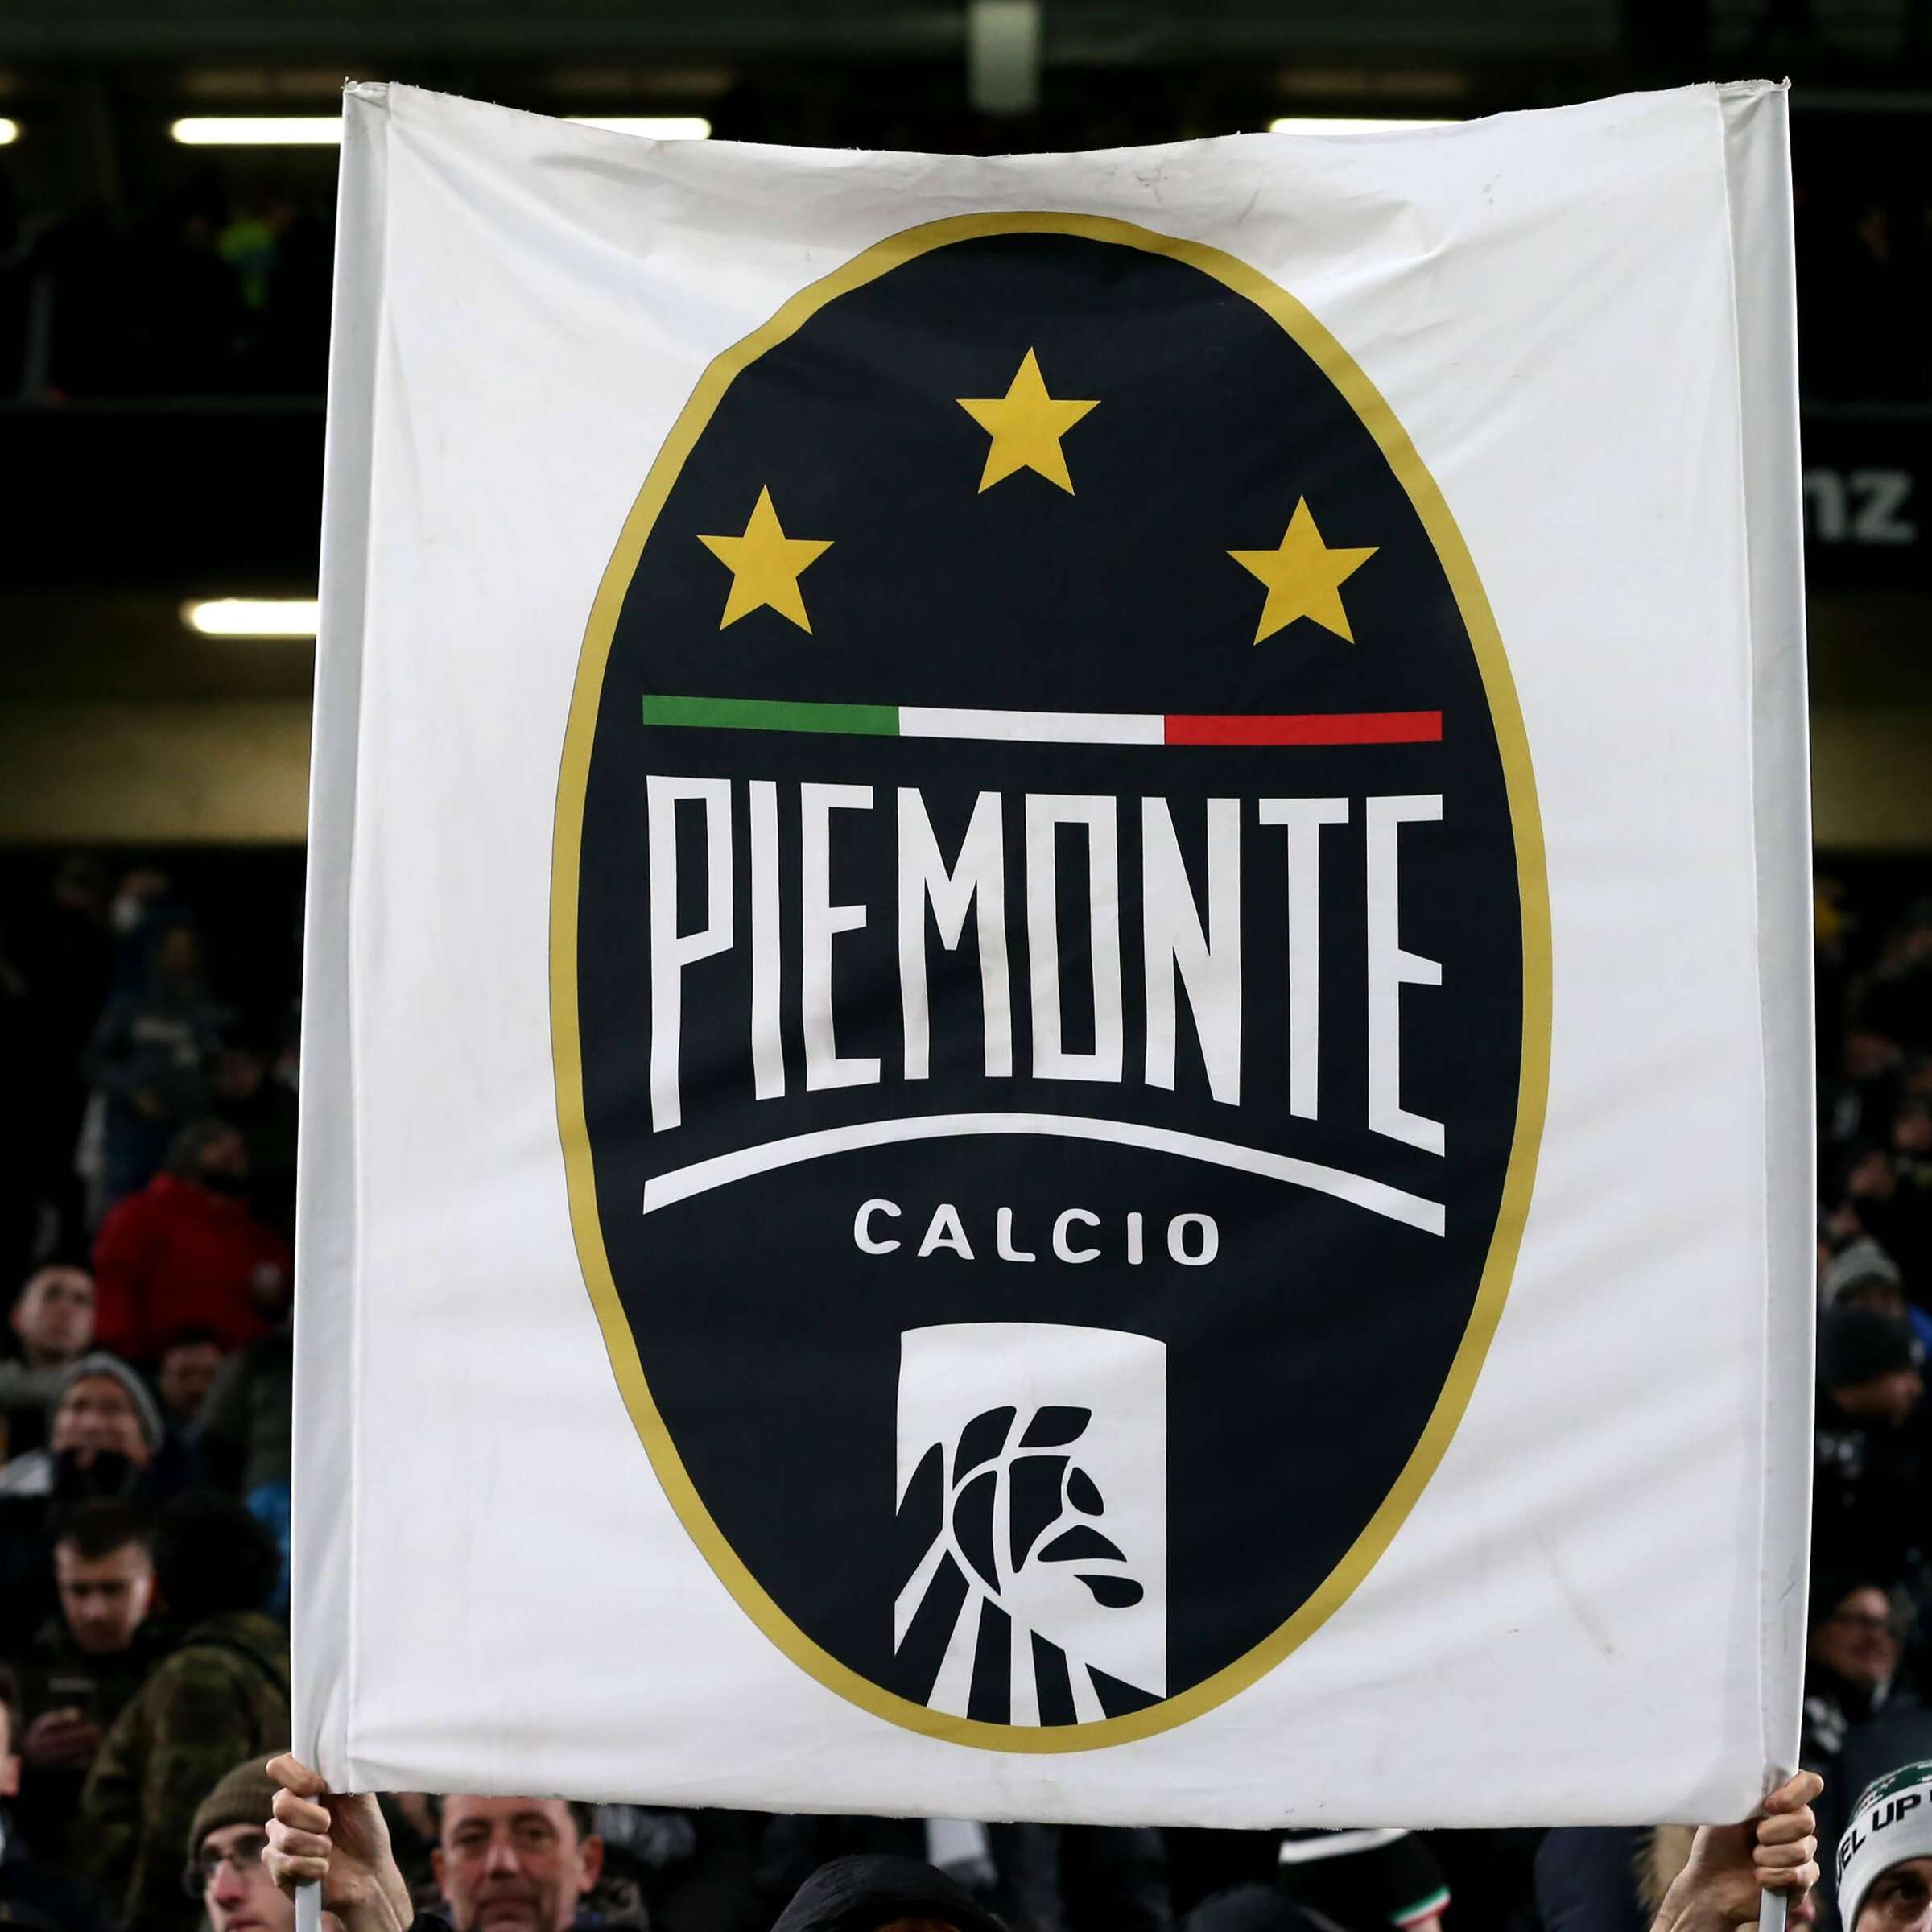 26433491-eine-piemonte-calcio-fahne-wird-hochgehalten-juventus-wird-in-fifa-20-als-piemonte-calcio-bezeichnet-2gYuFJKE7jec.jpg